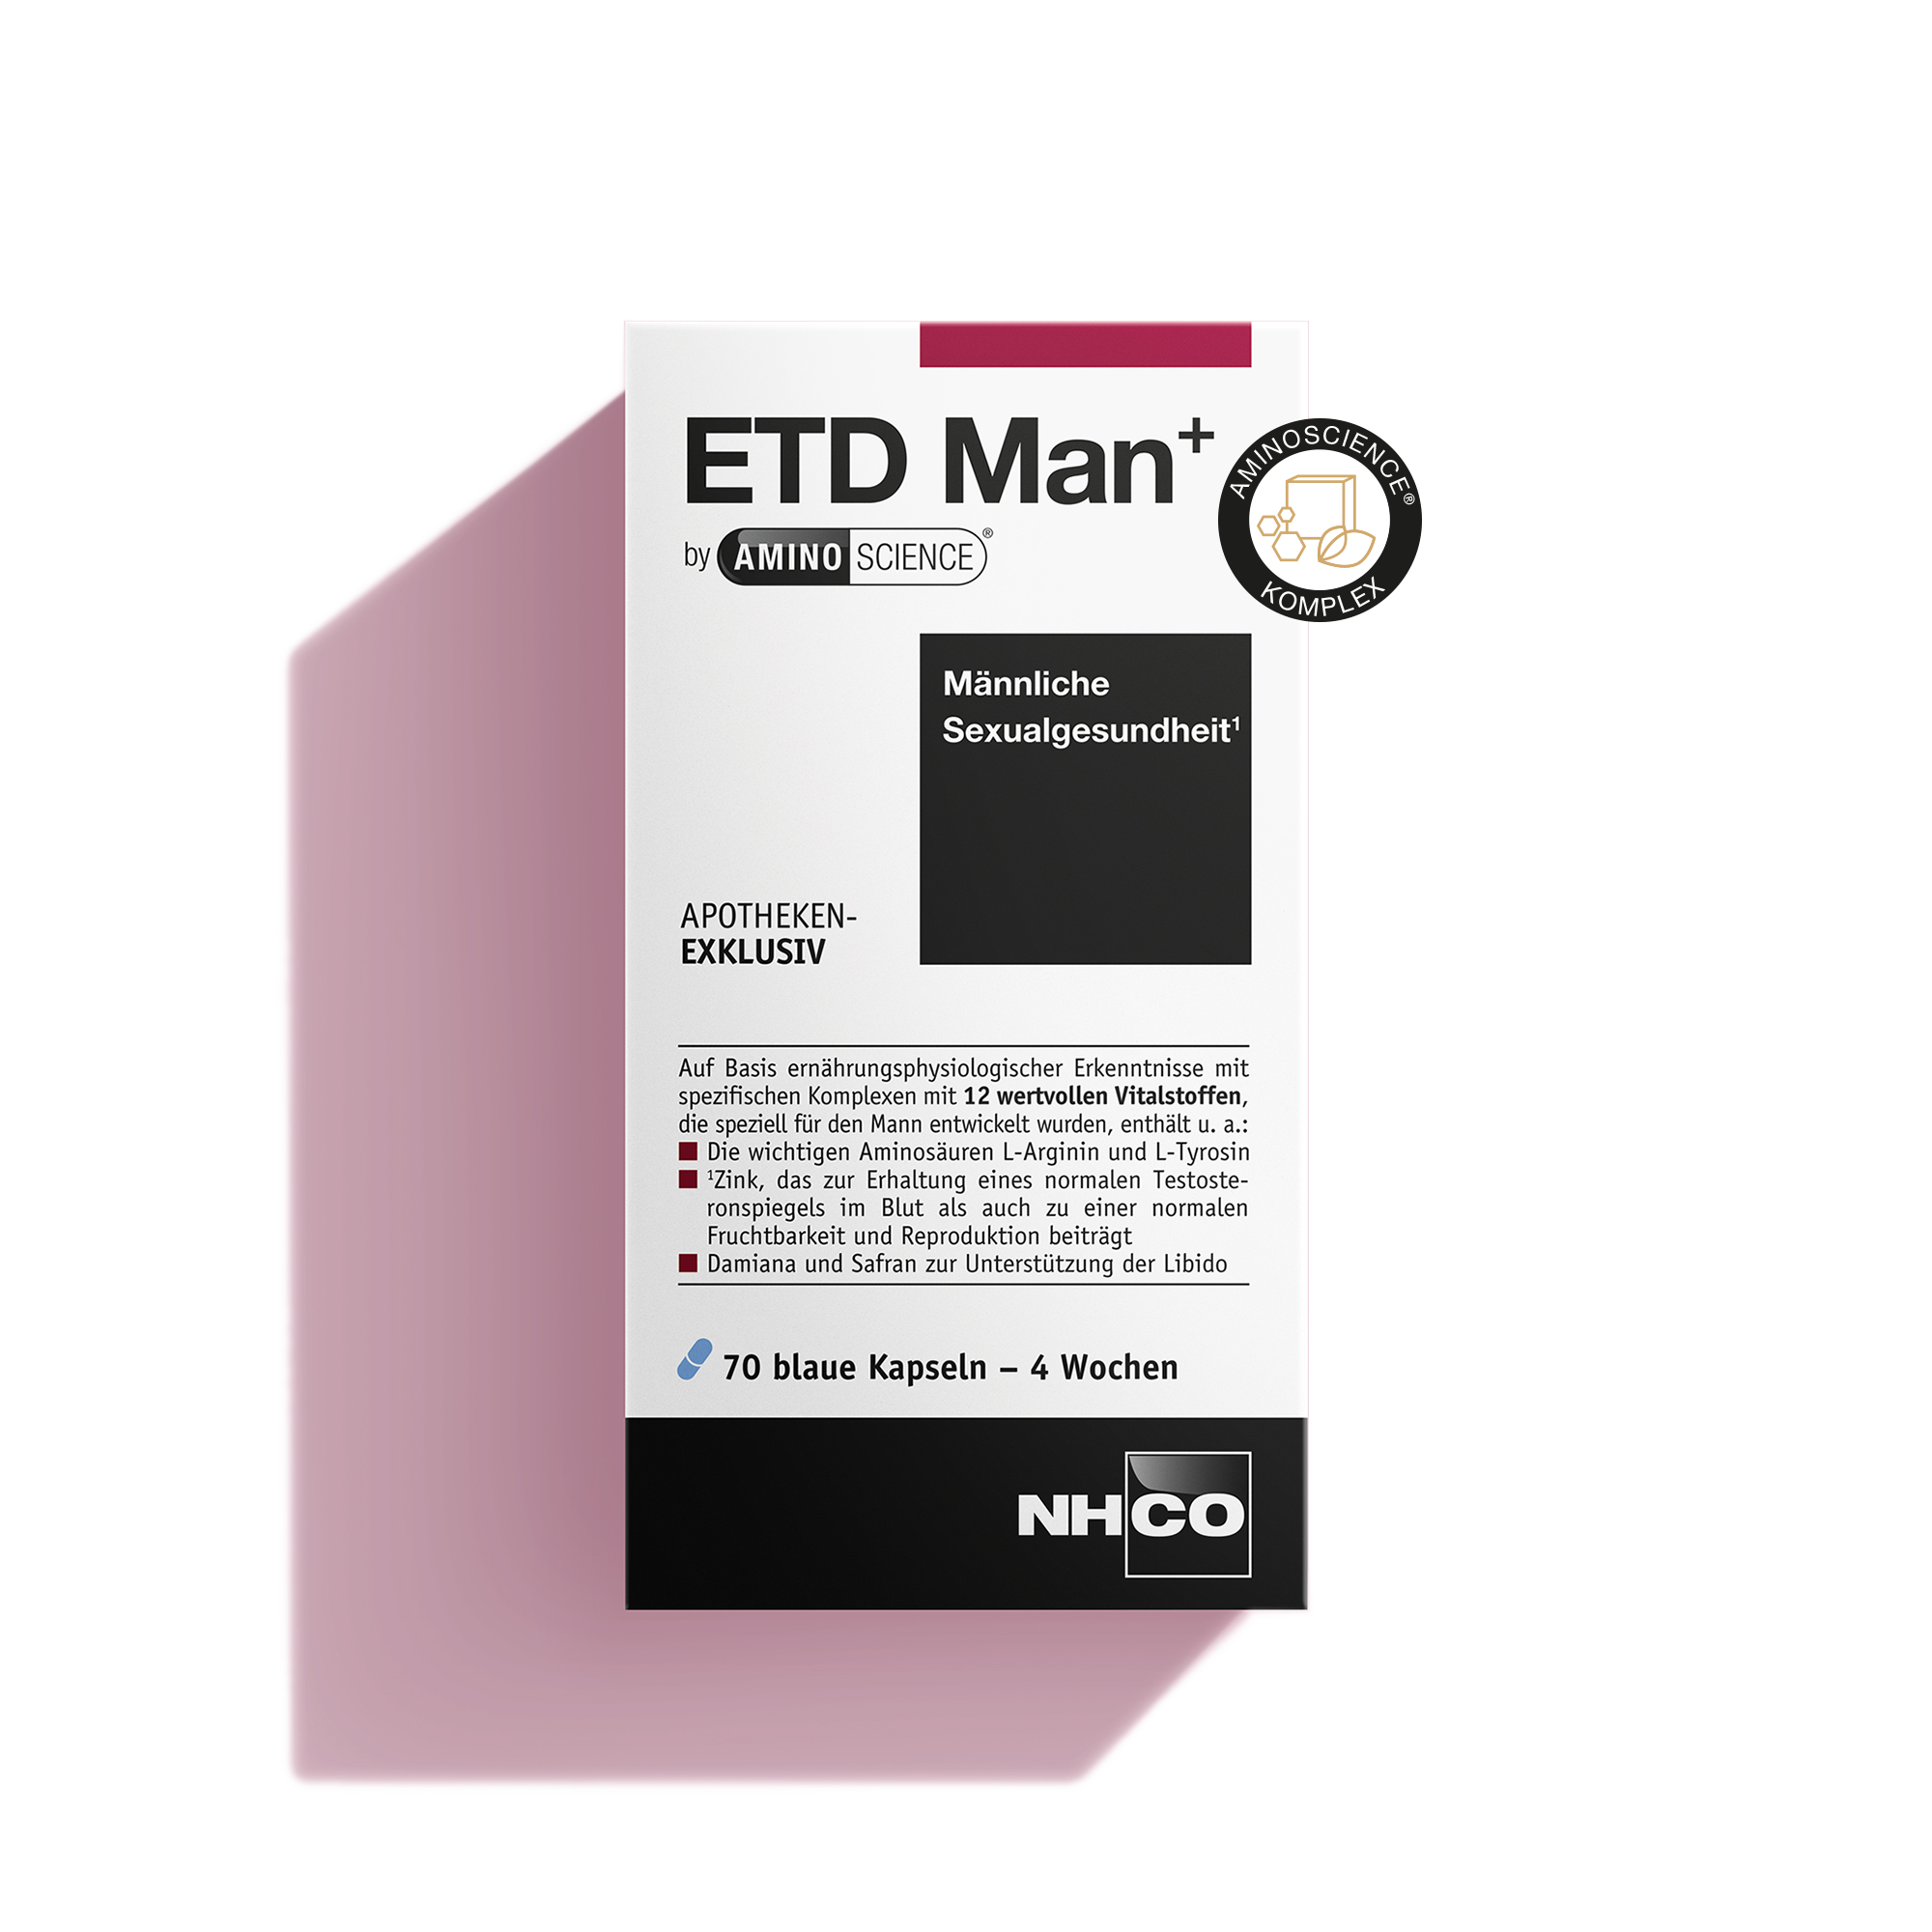 Packshot von ETD Man+, Aminosäure-basiertes Nahrungsergänzungsmittel für männliche Sexualgesundheit.